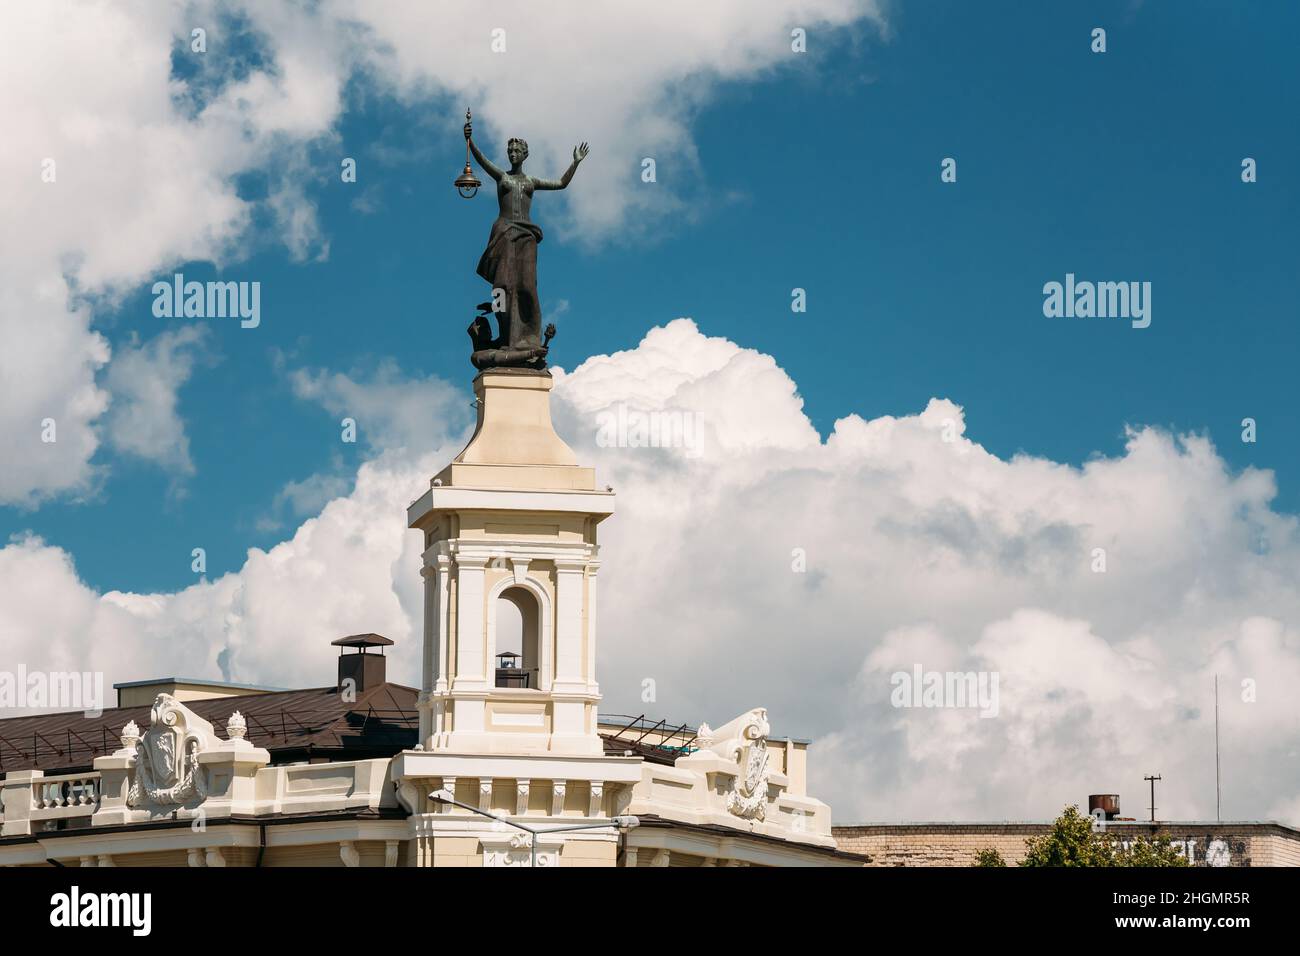 Vilnius, Lituania. Statua di una donna con una Lanterna nelle sue mani sul tetto del Museo dell'energia e della tecnologia contro Un cielo blu soleggiato Foto Stock